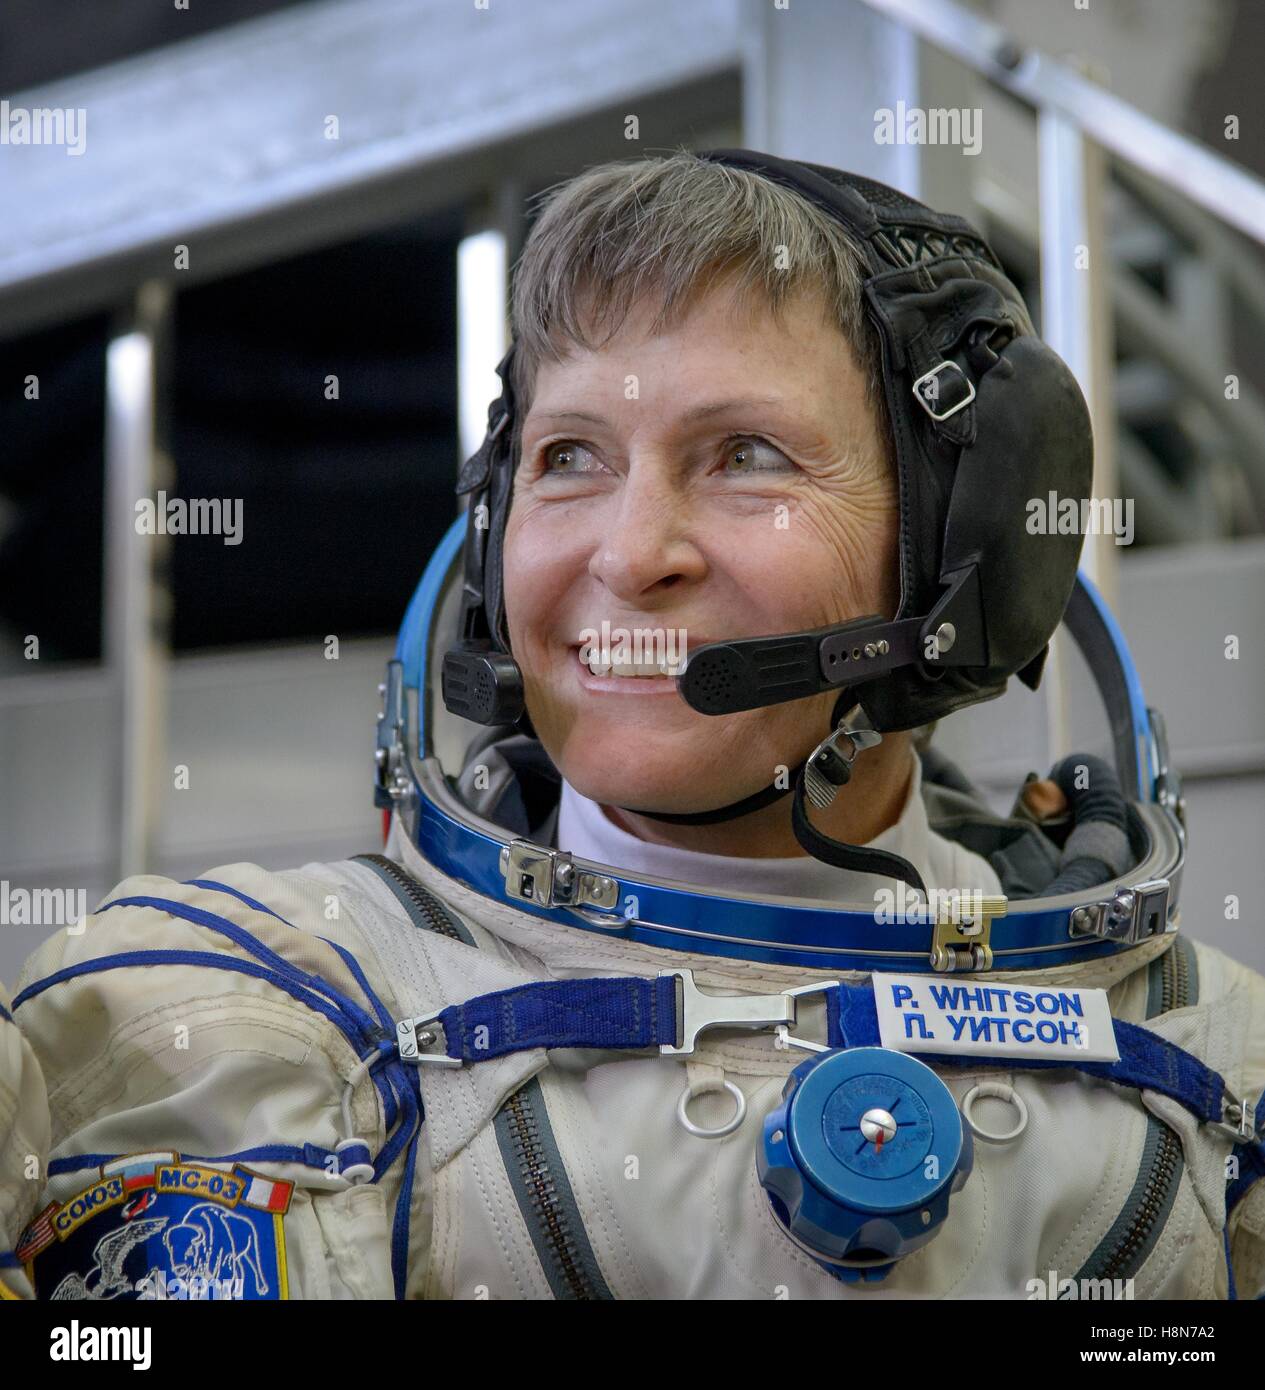 La NASA Stazione Spaziale Internazionale Expedition 50 Soyuz MS-03 primo equipaggio astronauta American Peggy Whitson si prepara per la finale degli esami di qualifica al Gagarin Cosmonaut Training Center 25 ottobre 2016 nella città delle stelle, Russia. Foto Stock